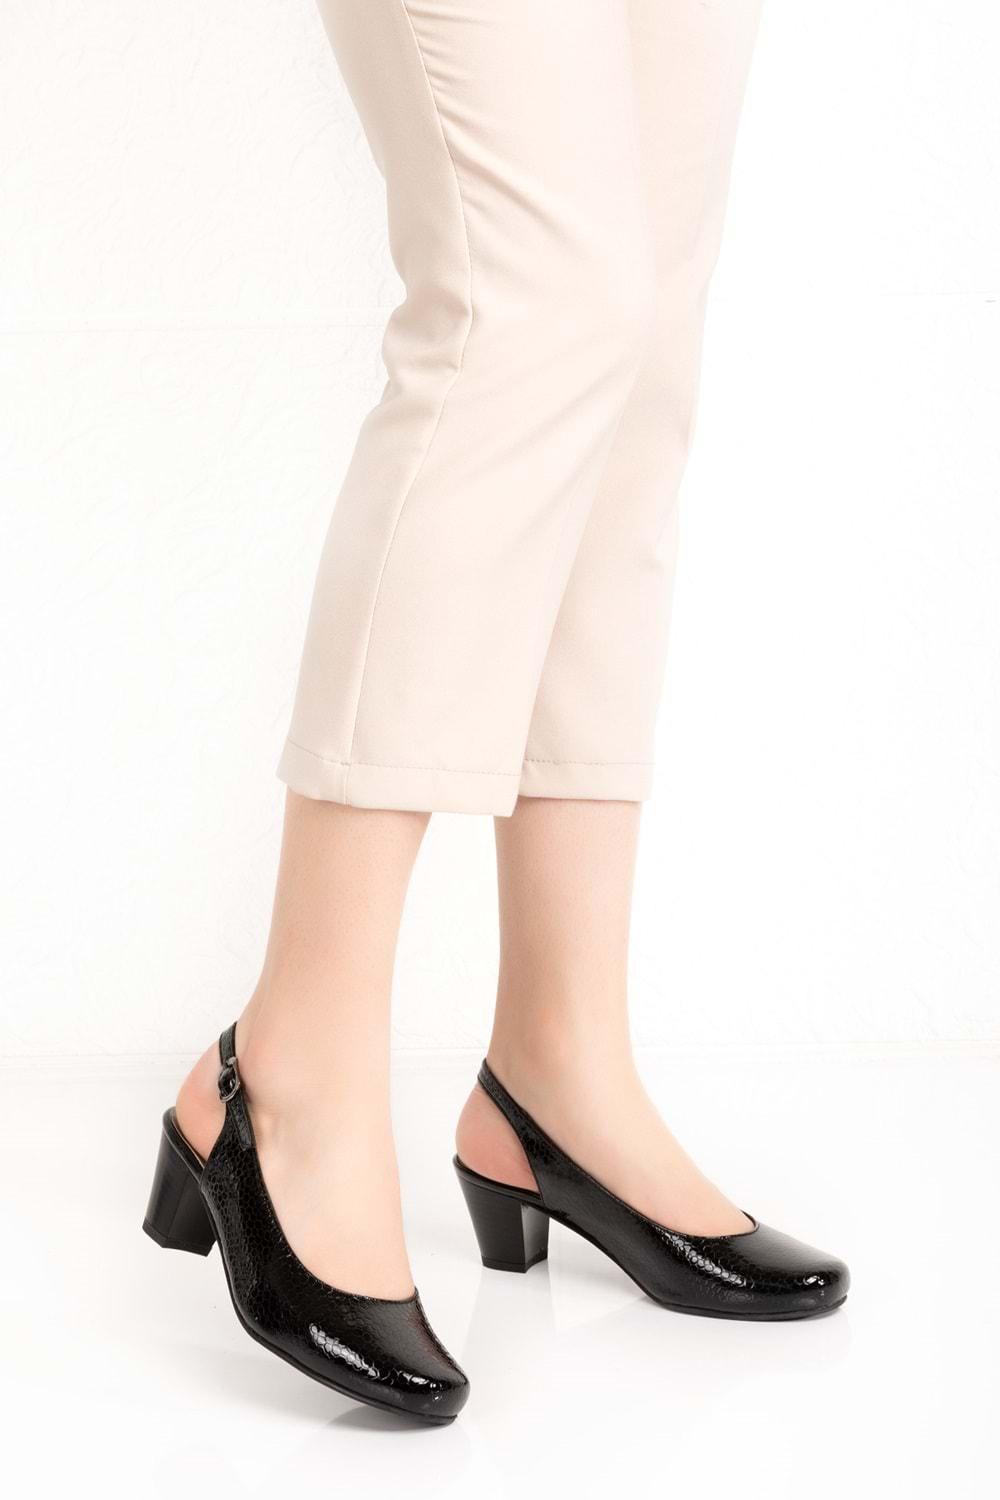 Gondol Kadın Hakiki Deri Klasik Topuklu Ayakkabı şhn.119 - Gondol - şhn.119 - Siyah Petek - 36